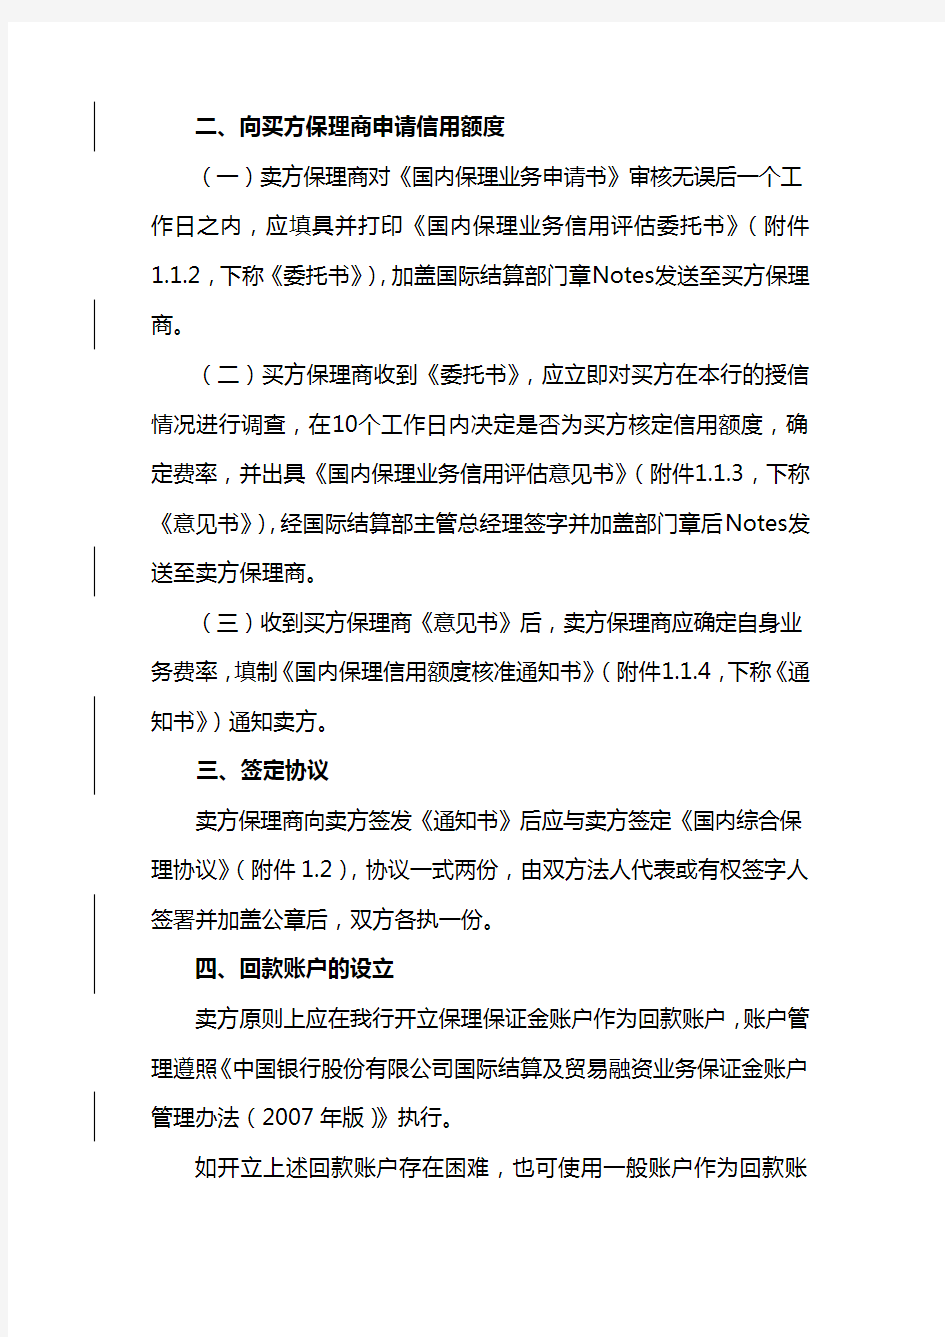 中国银行股份有限公司国内保理业务操作规程(2010年版)